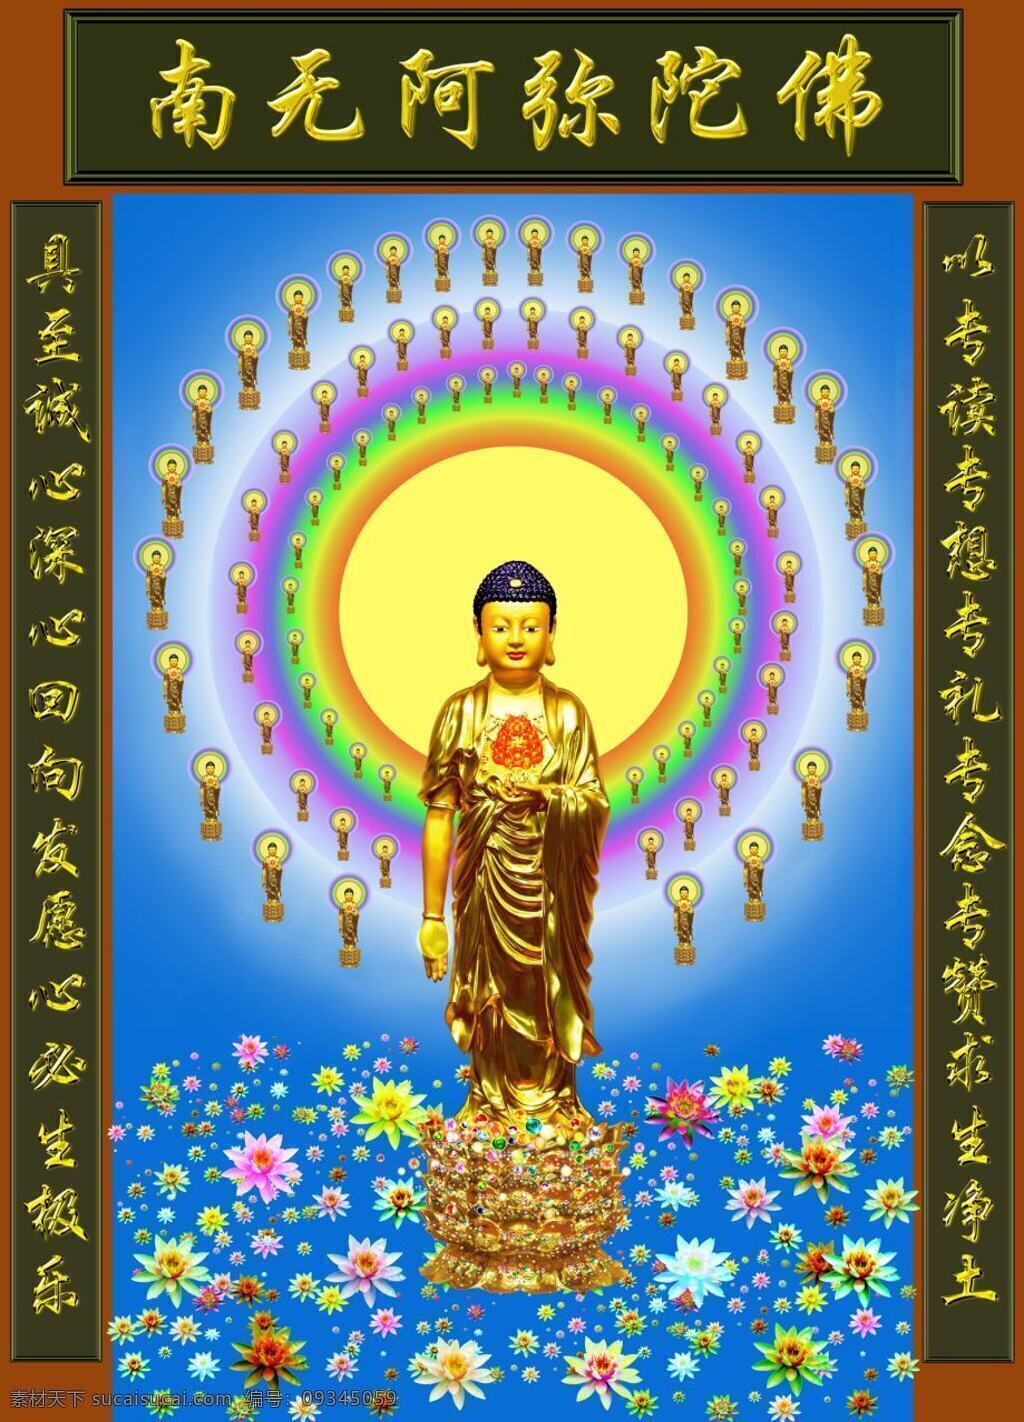 阿弥陀佛 佛像 文化艺术 宗教信仰 阿弥陀佛像 西方极乐世界 佛教圣像